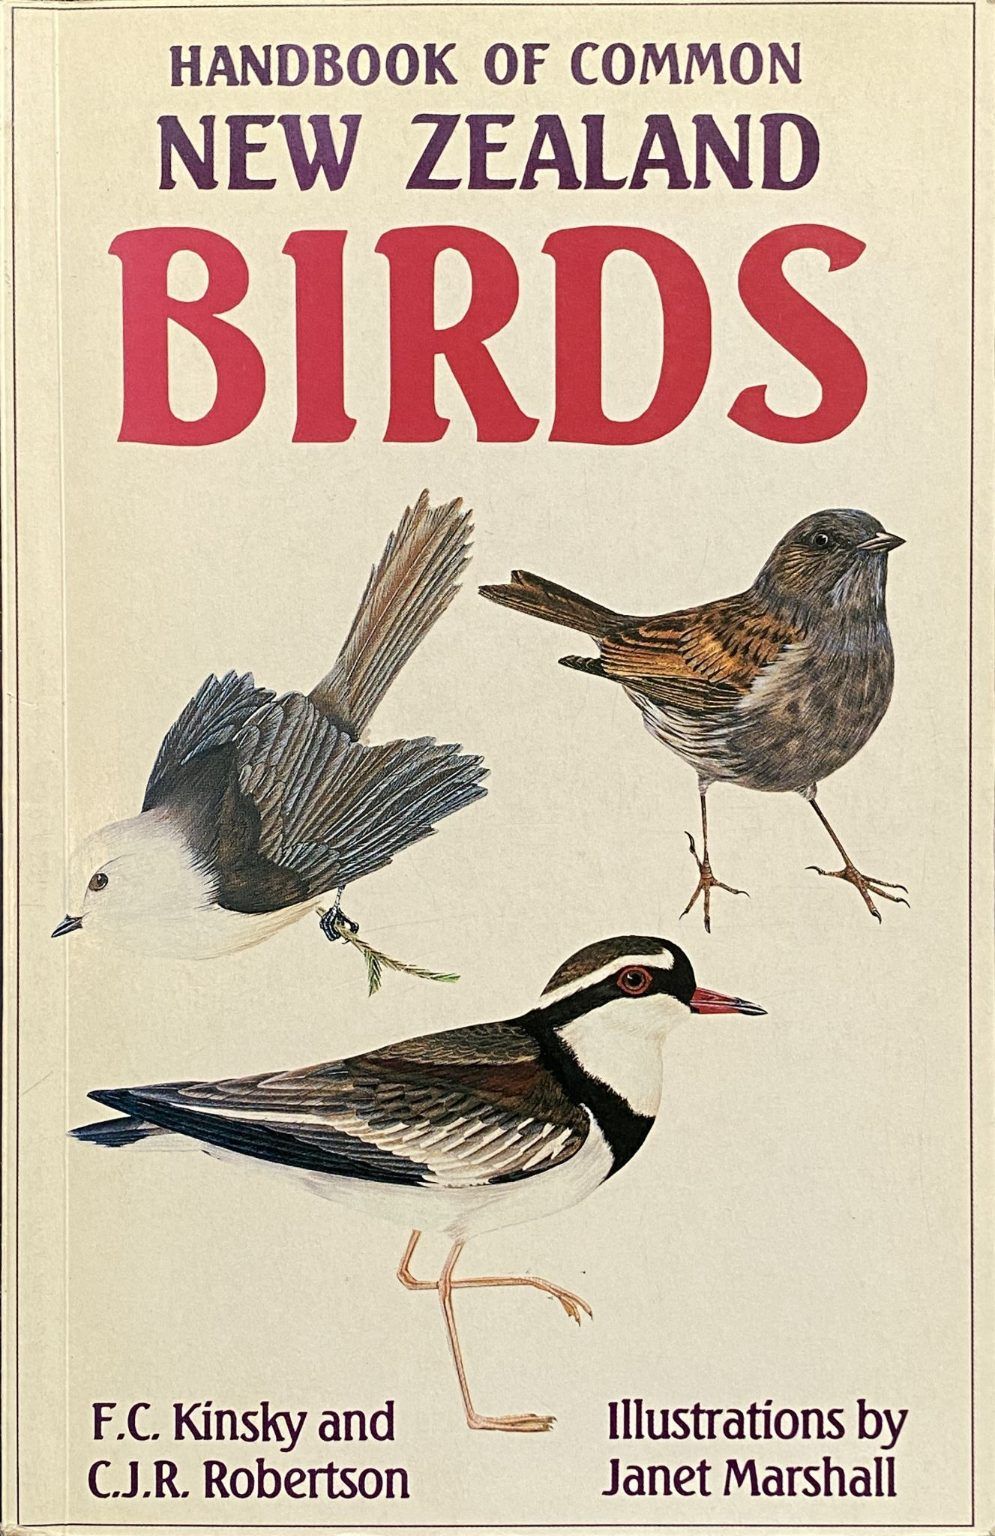 HANDBOOK OF COMMON NEW ZEALAND BIRDS